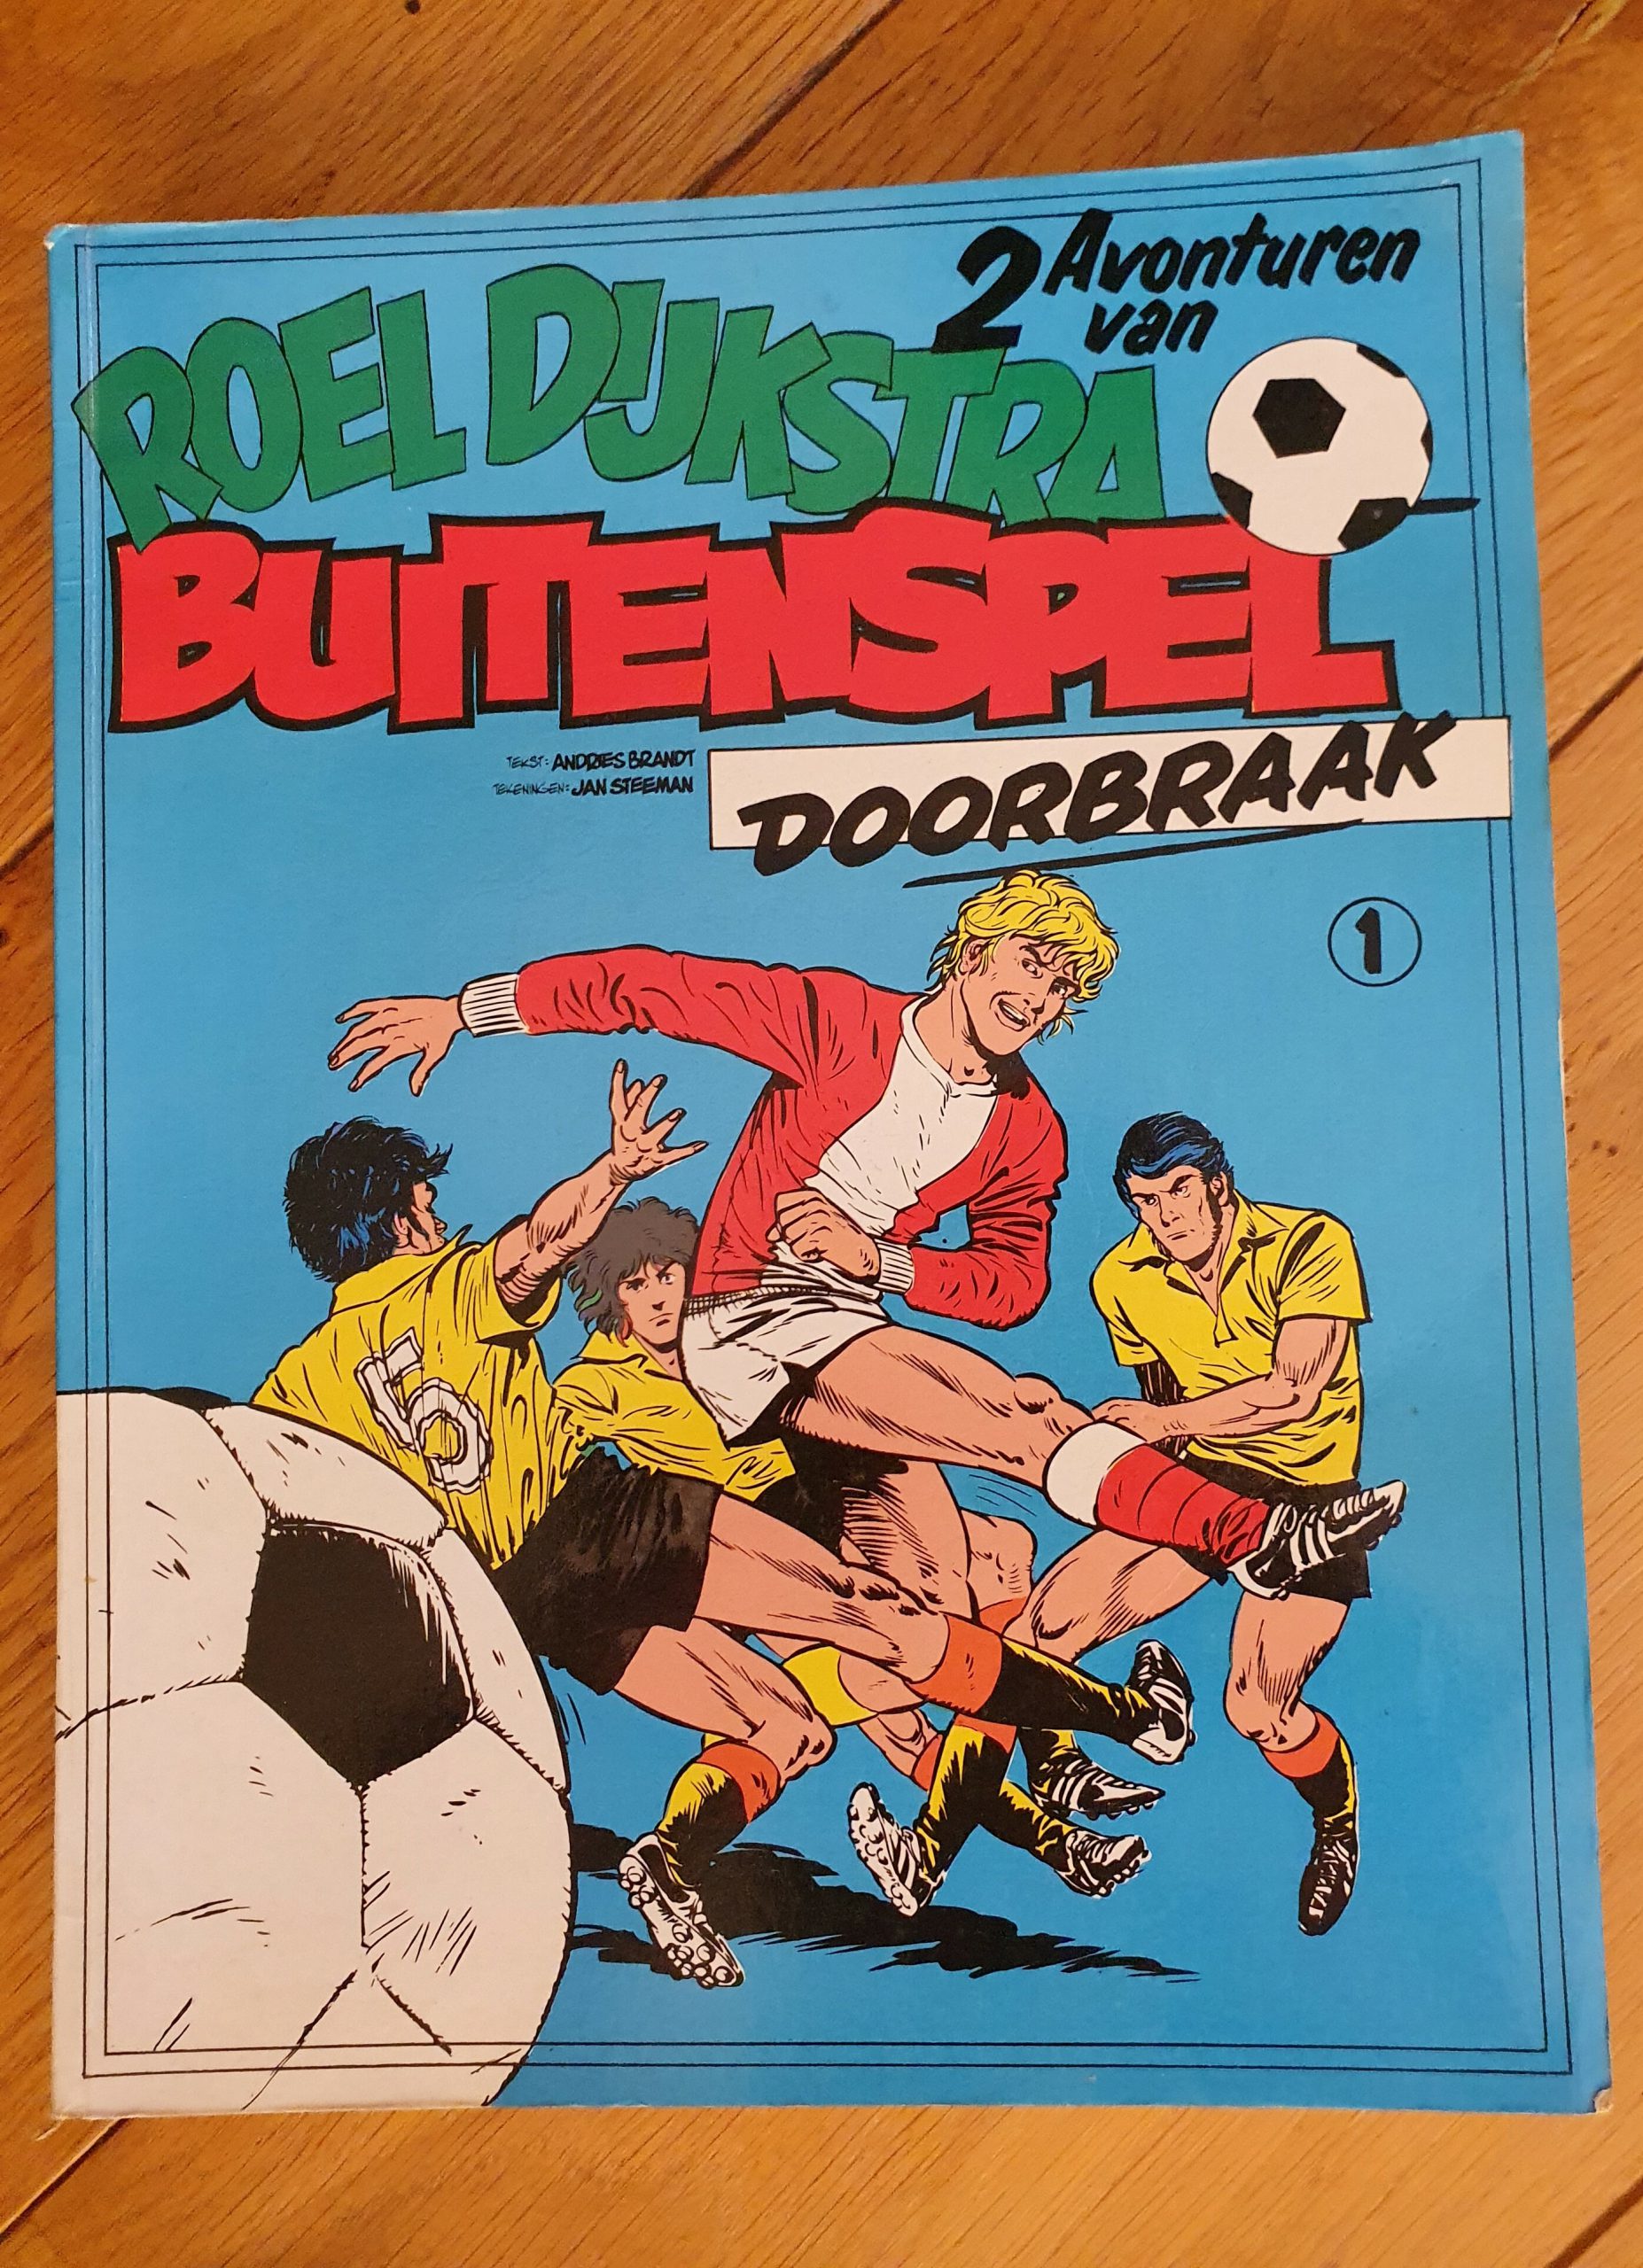 Roel Dijkstra - 1. Buitenspel & Doorbraak (1977)